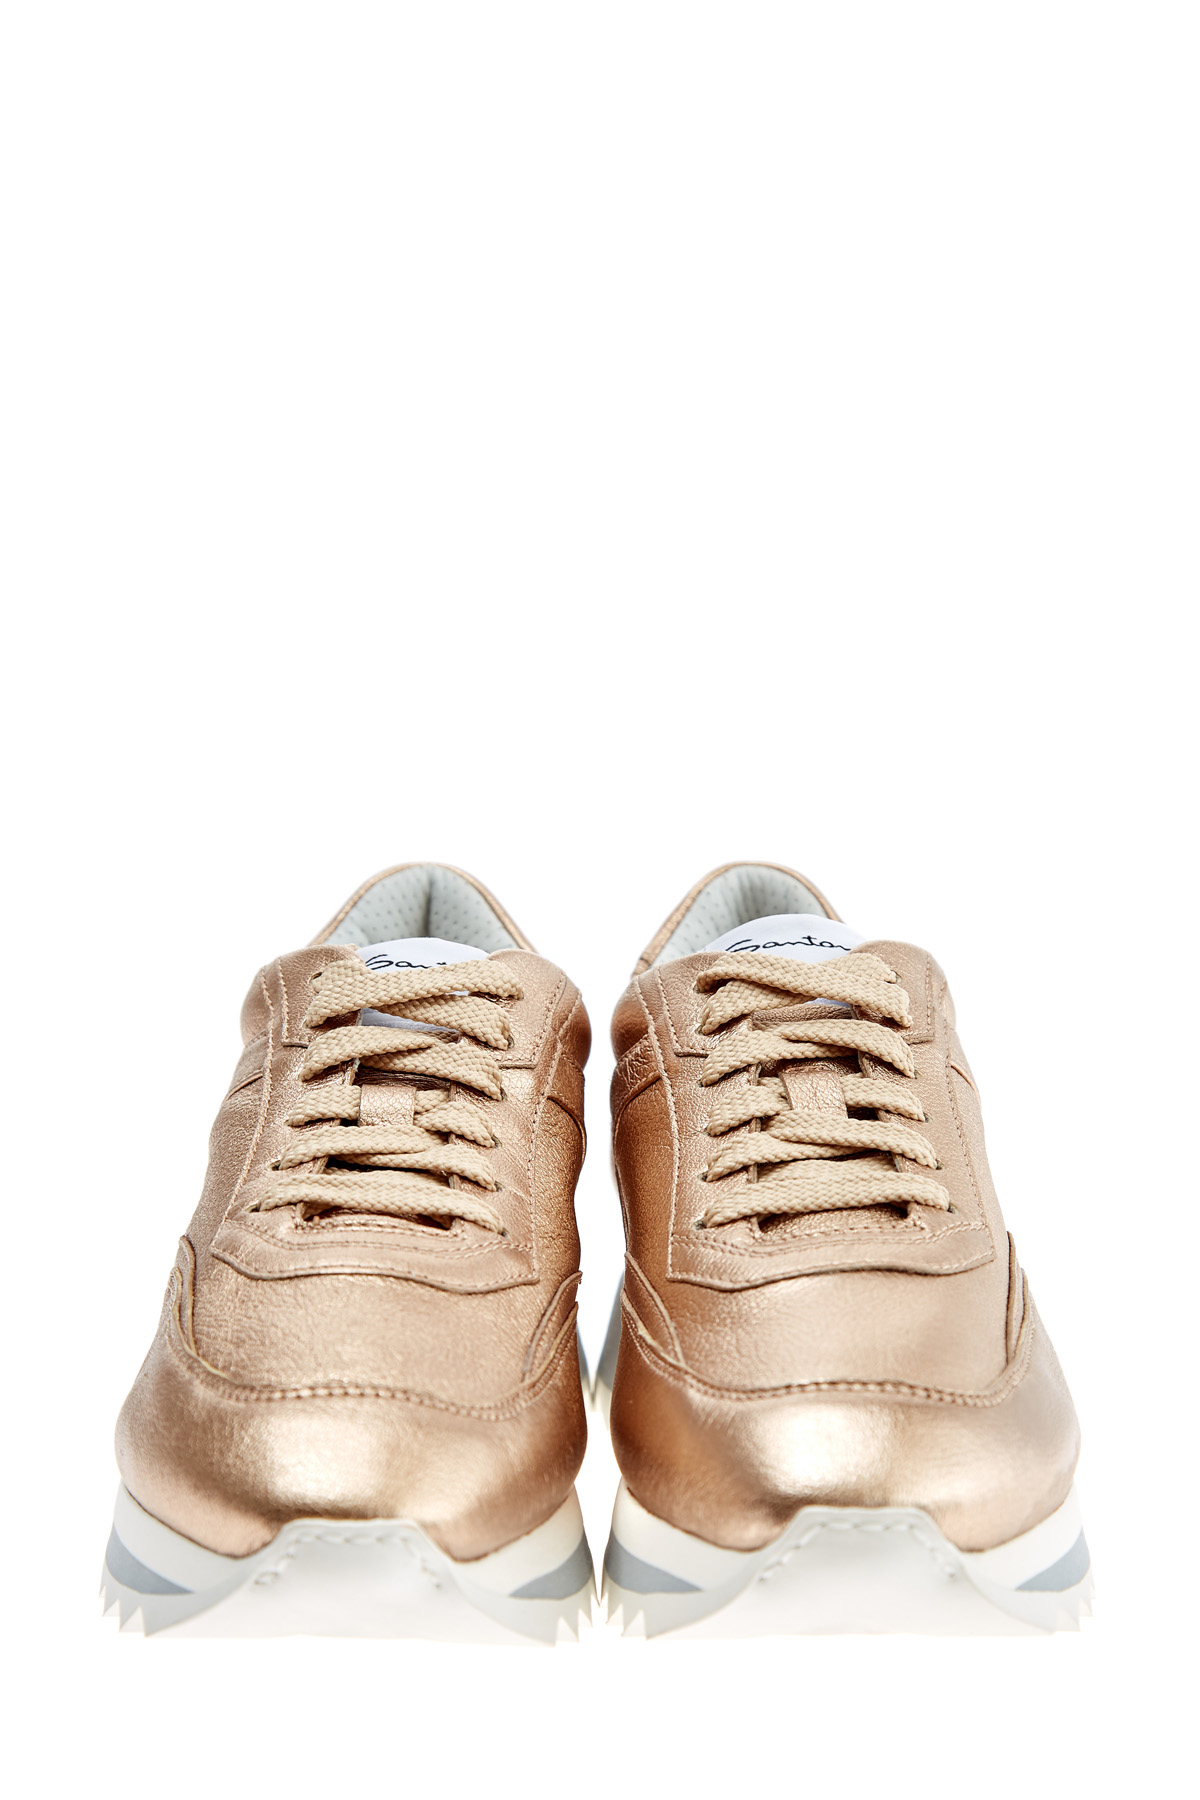 Кроссовки с металлизированной отделкой золотистого цвета SANTONI, размер 36.5;37 - фото 5